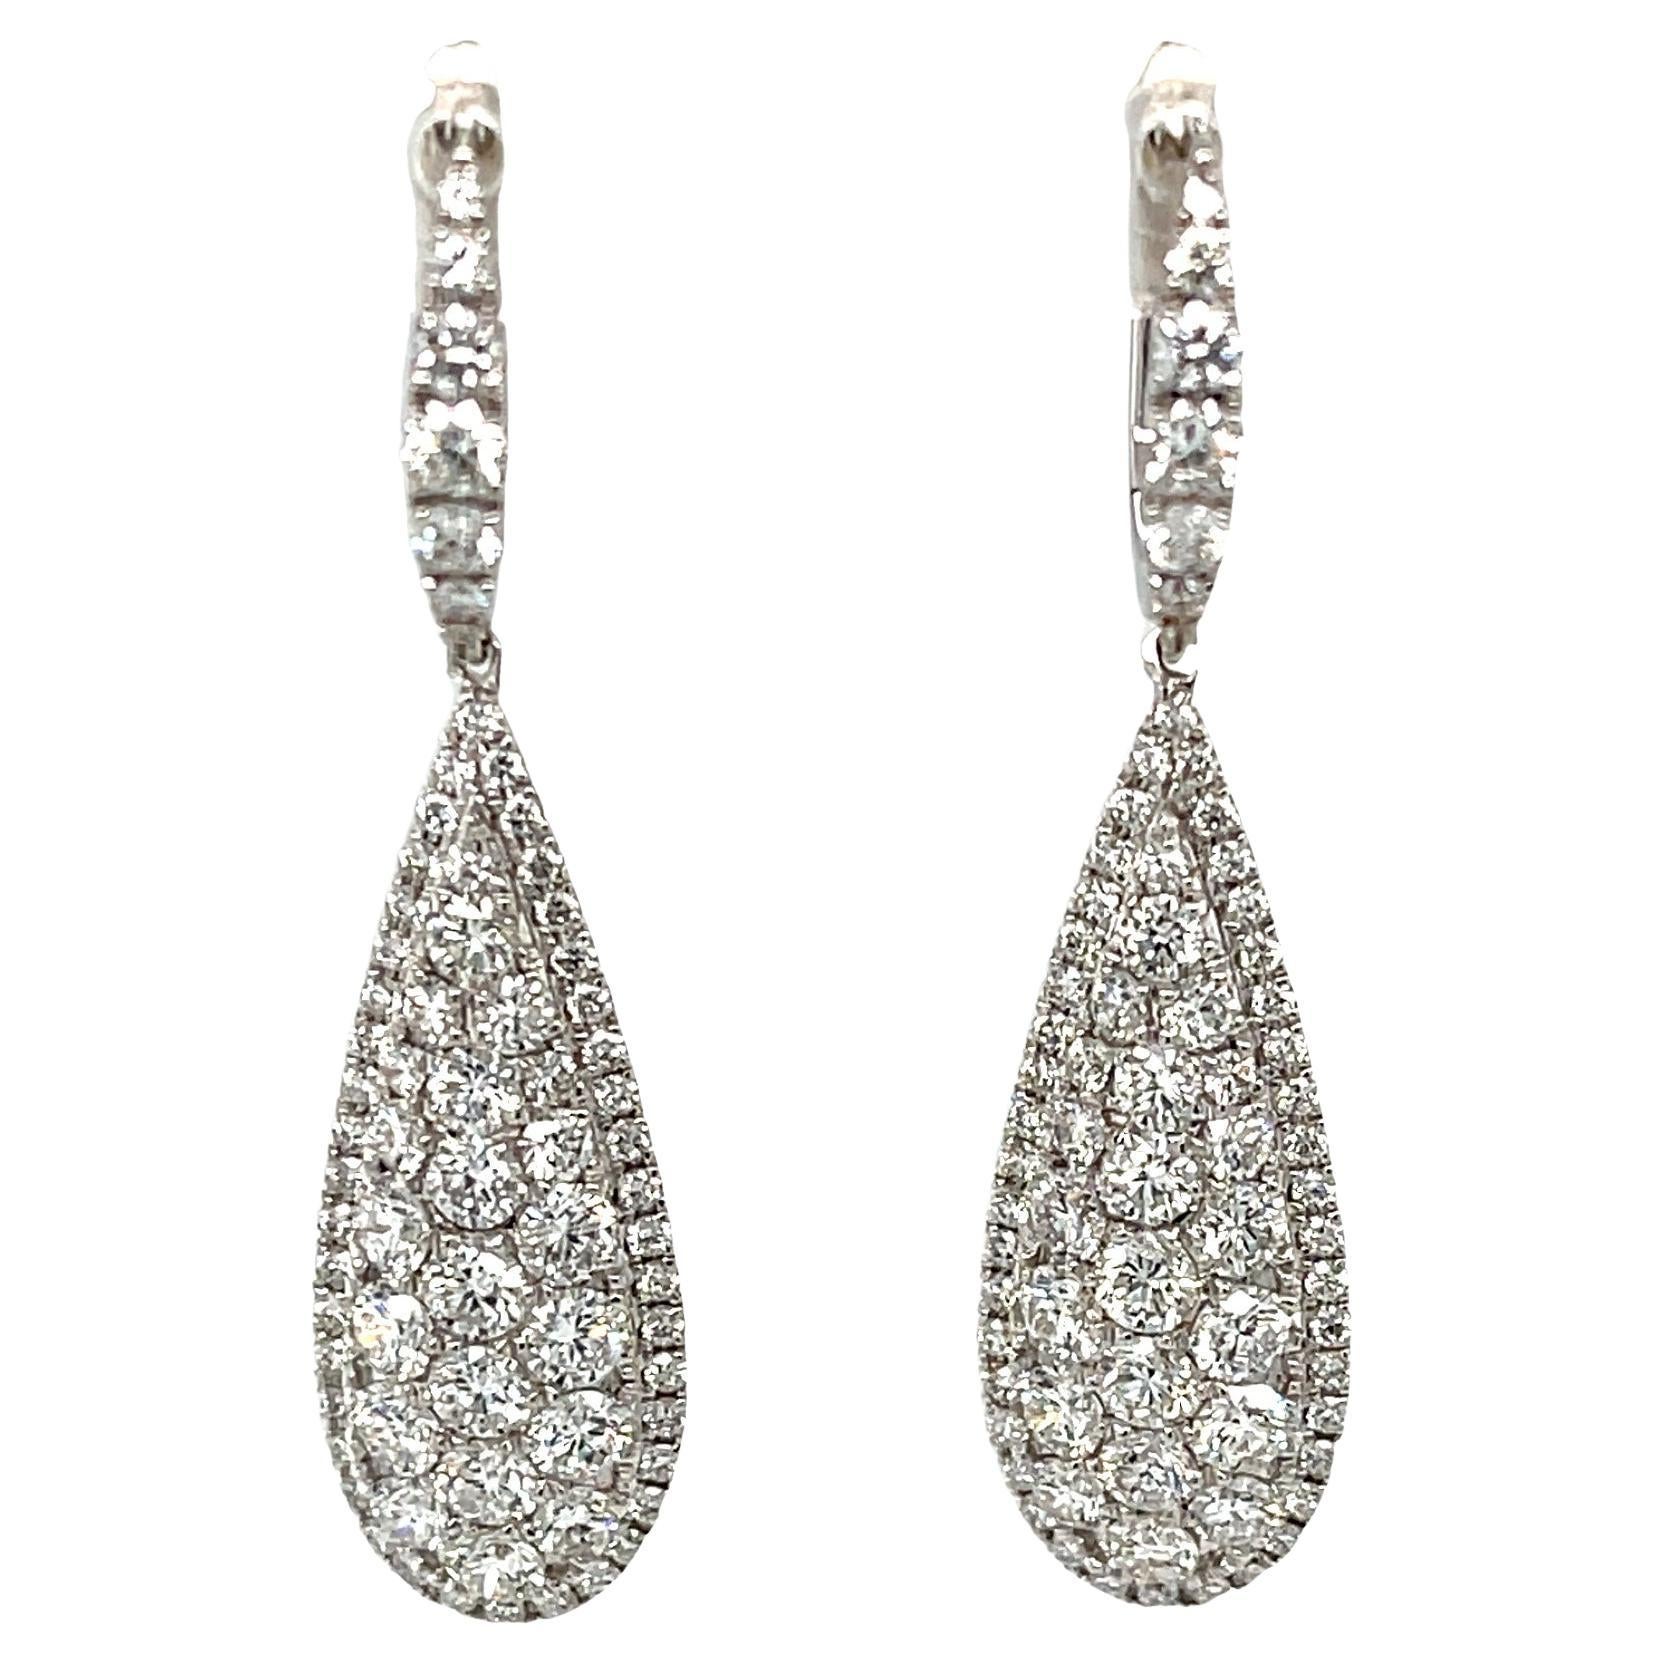 Diamant- und 18 Karat Weißgold Tropfen-Ohrringe mit Diamanten, insgesamt 3,15 Karat